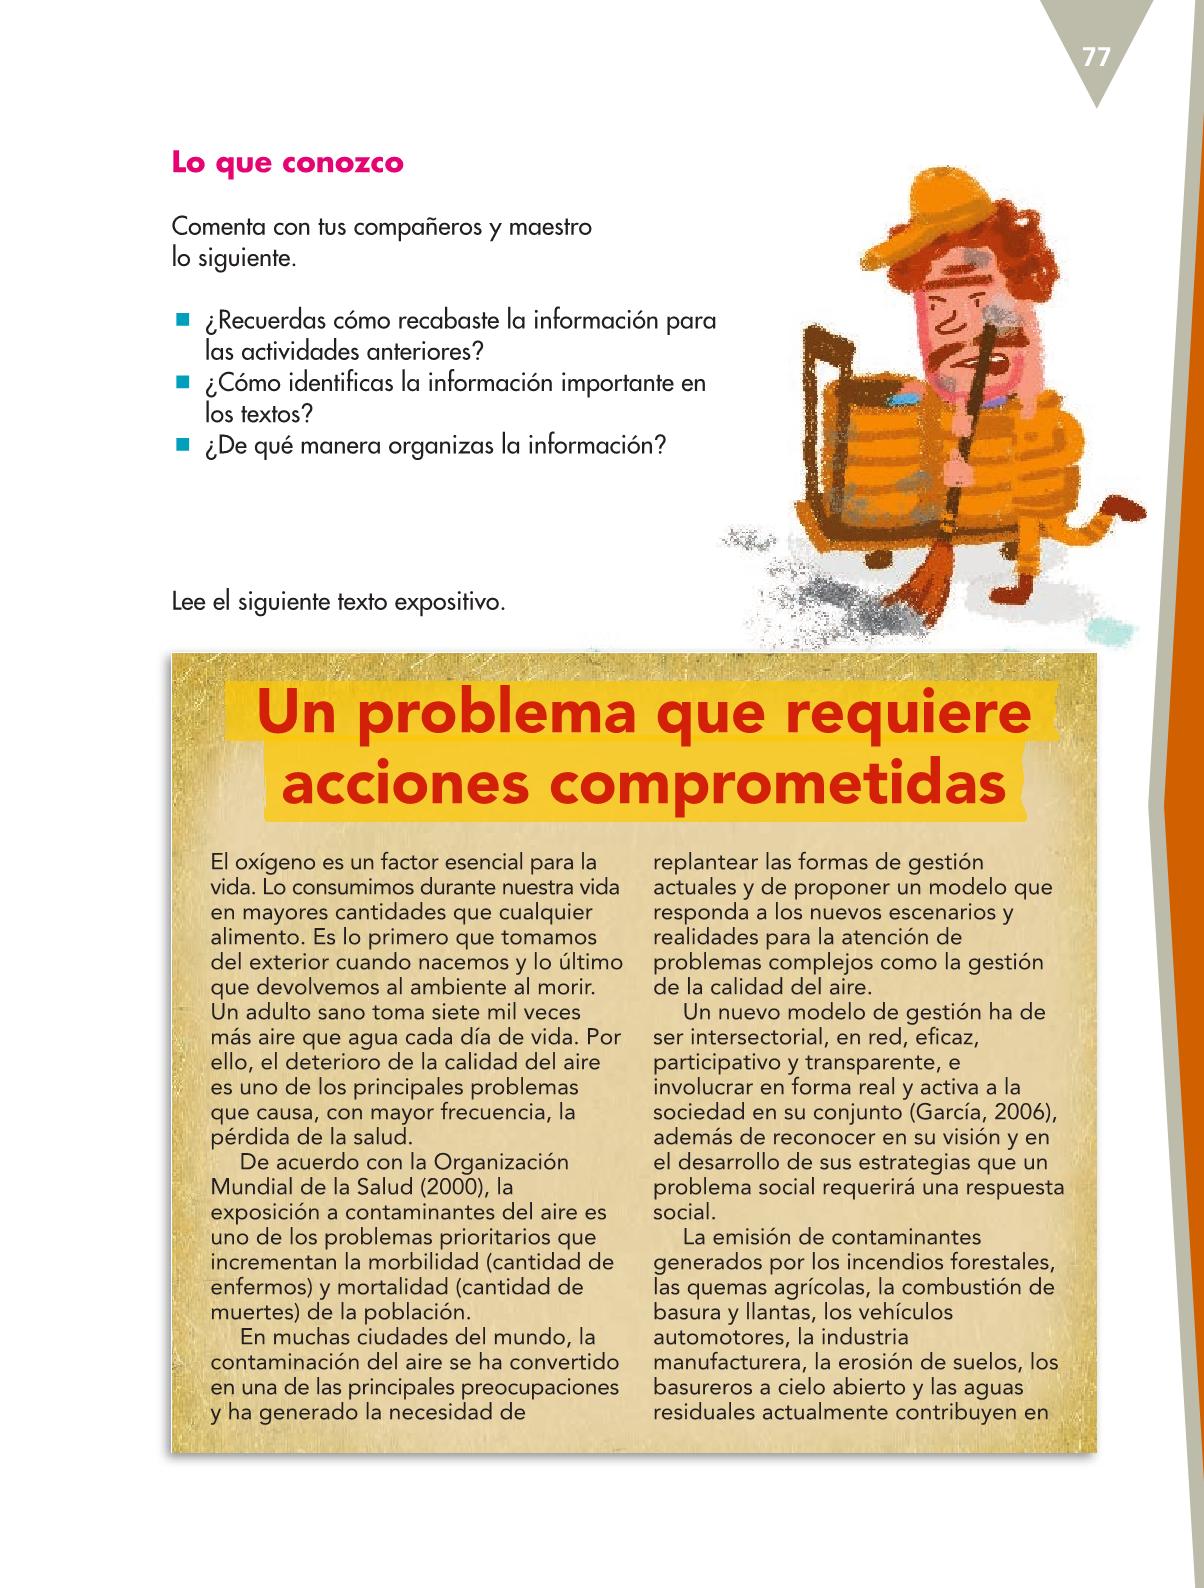 Español Quinto grado 2016-2017 - Libro de texto Online - Página 103 de